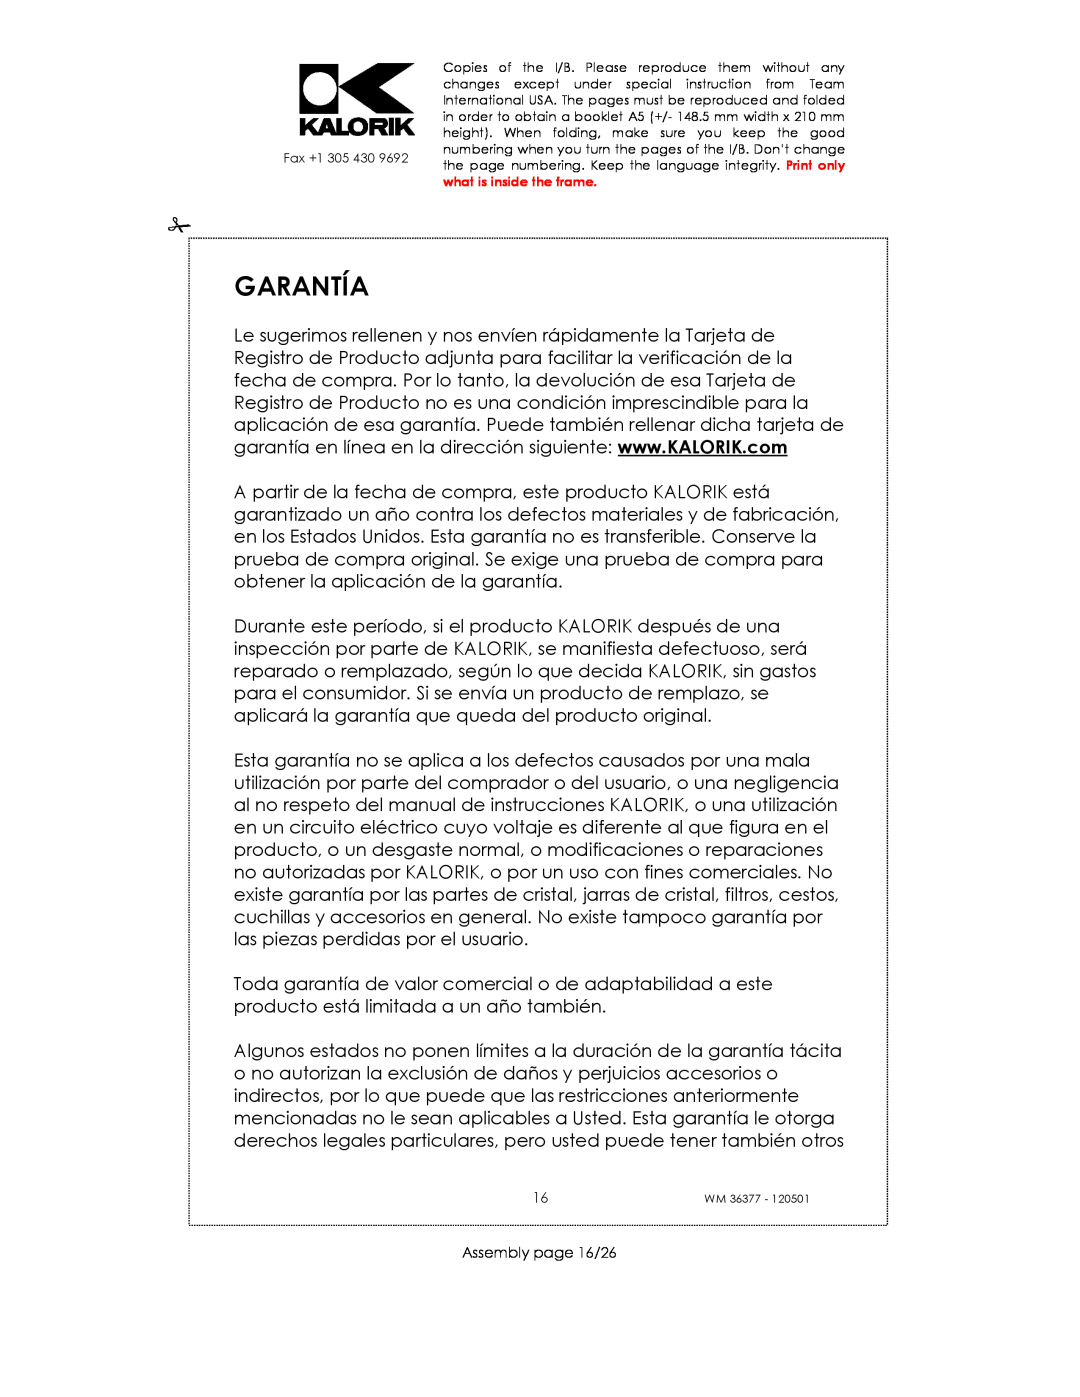 Kalorik WM 36377 manual Garantía, Assembly page 16/26 